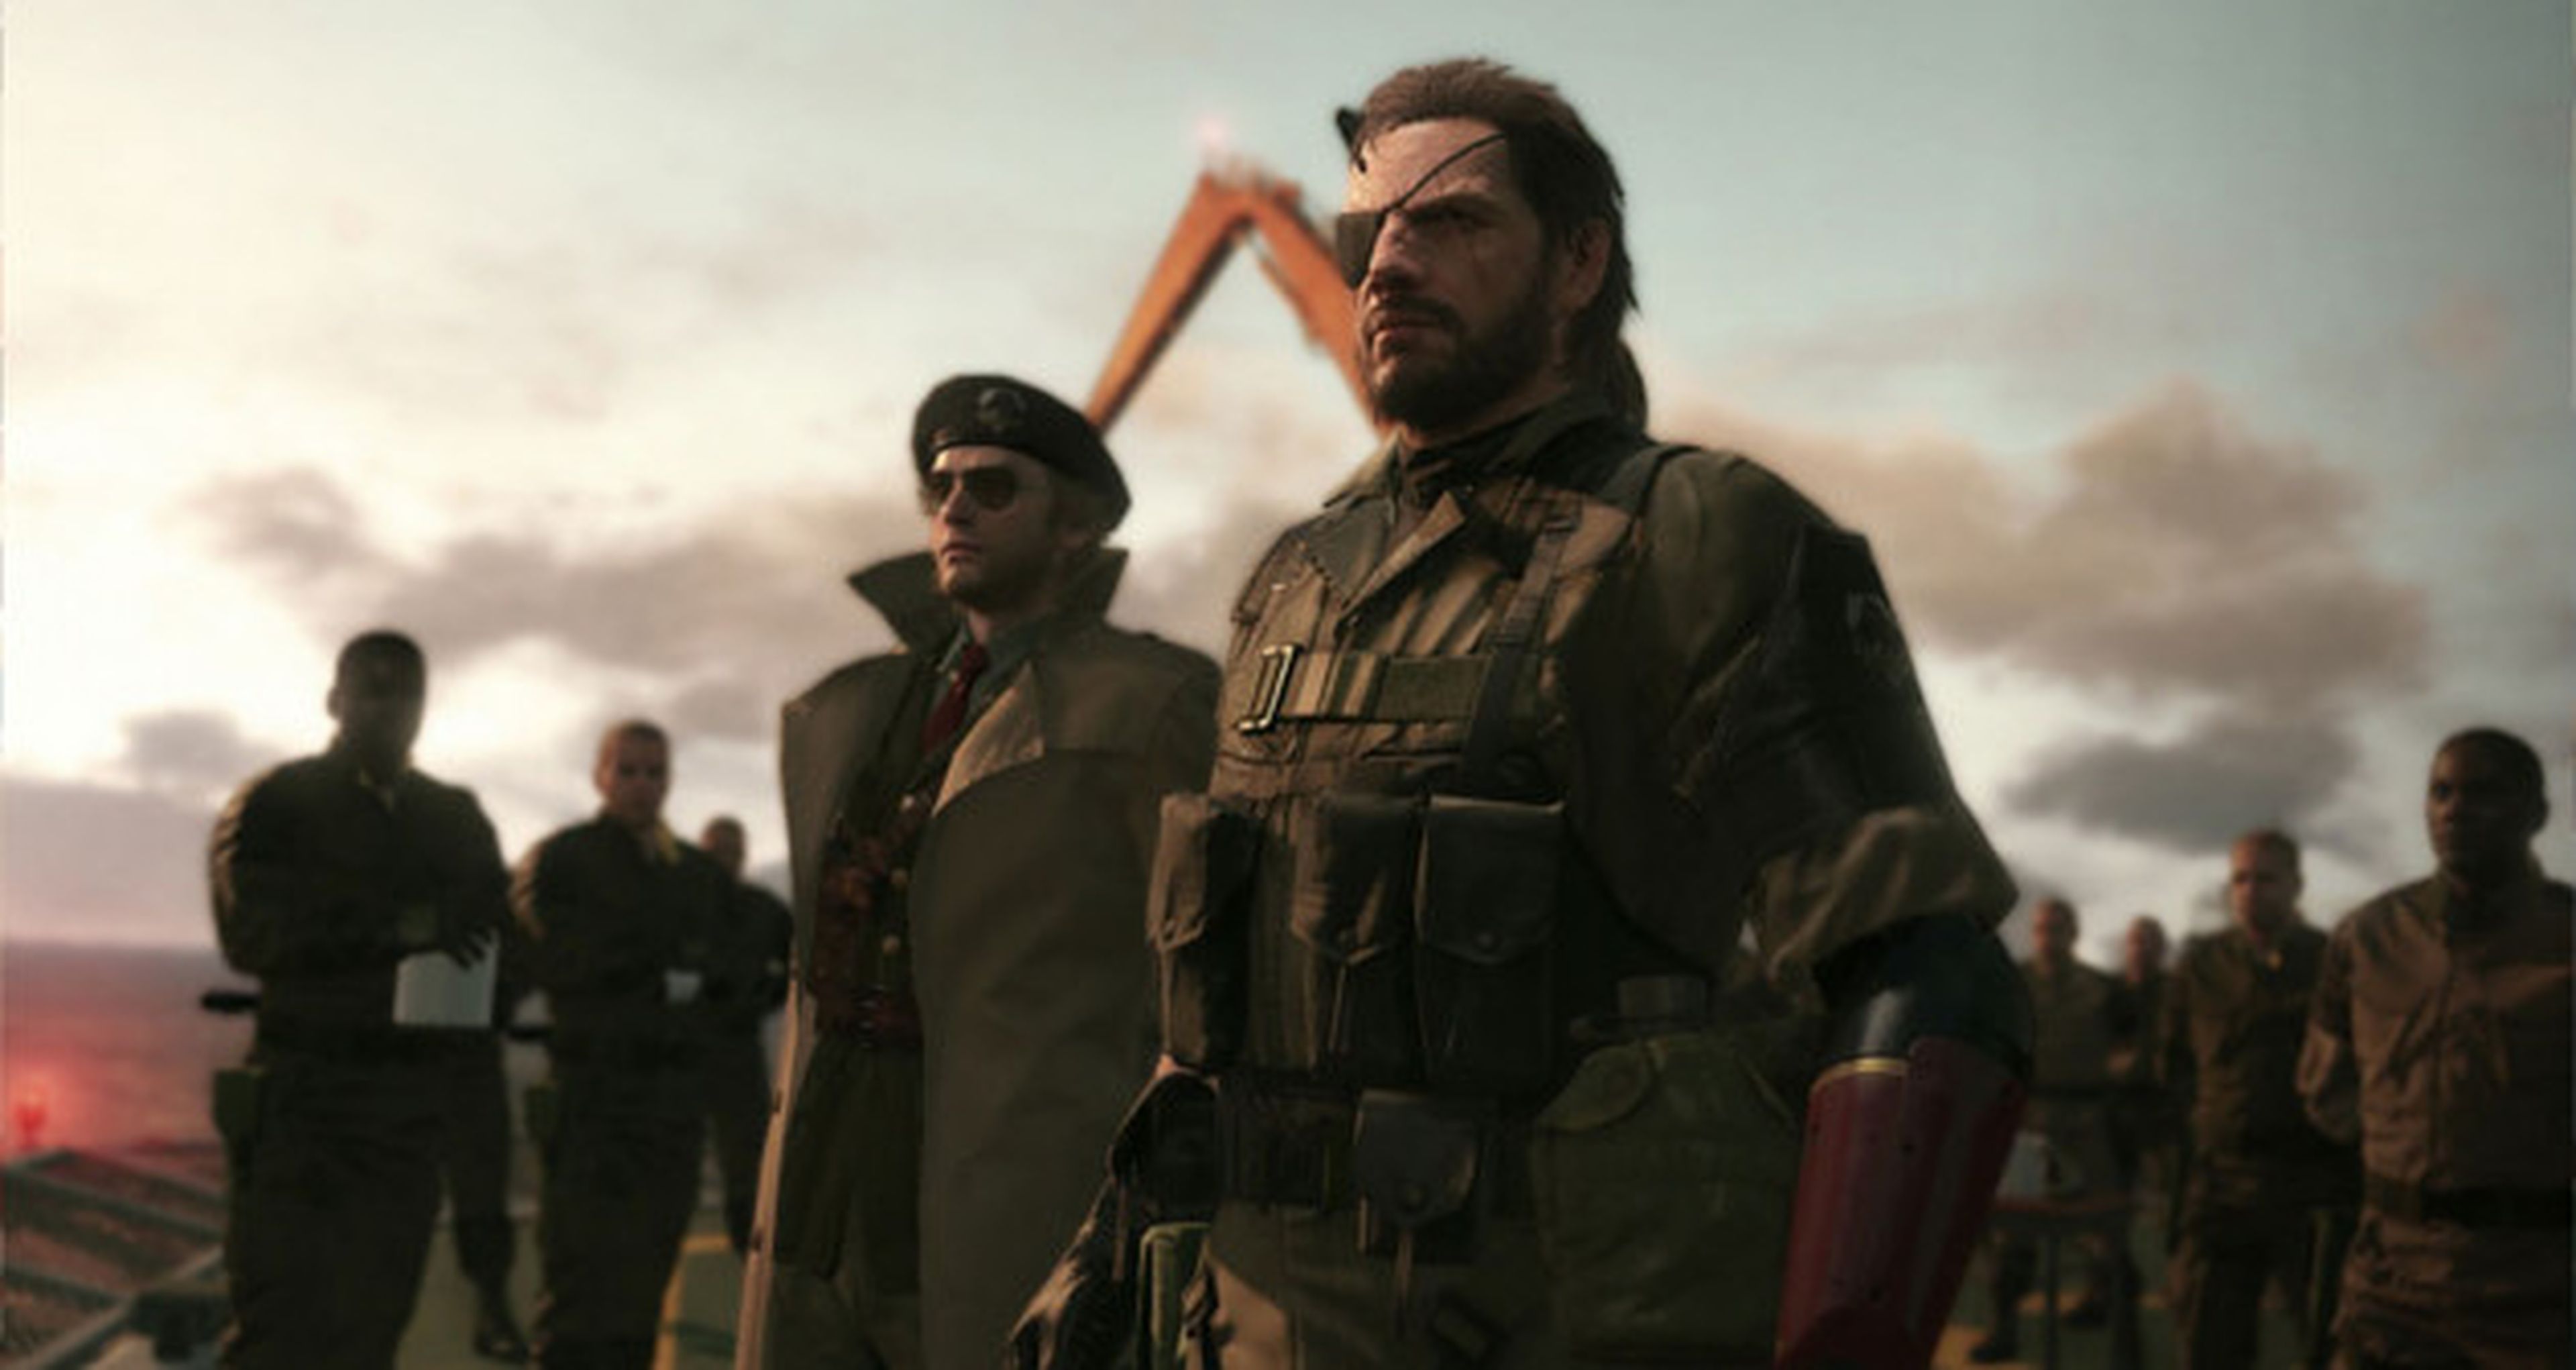 La importancia del idioma de los soldados en Metal Gear Solid V The Phantom Pain